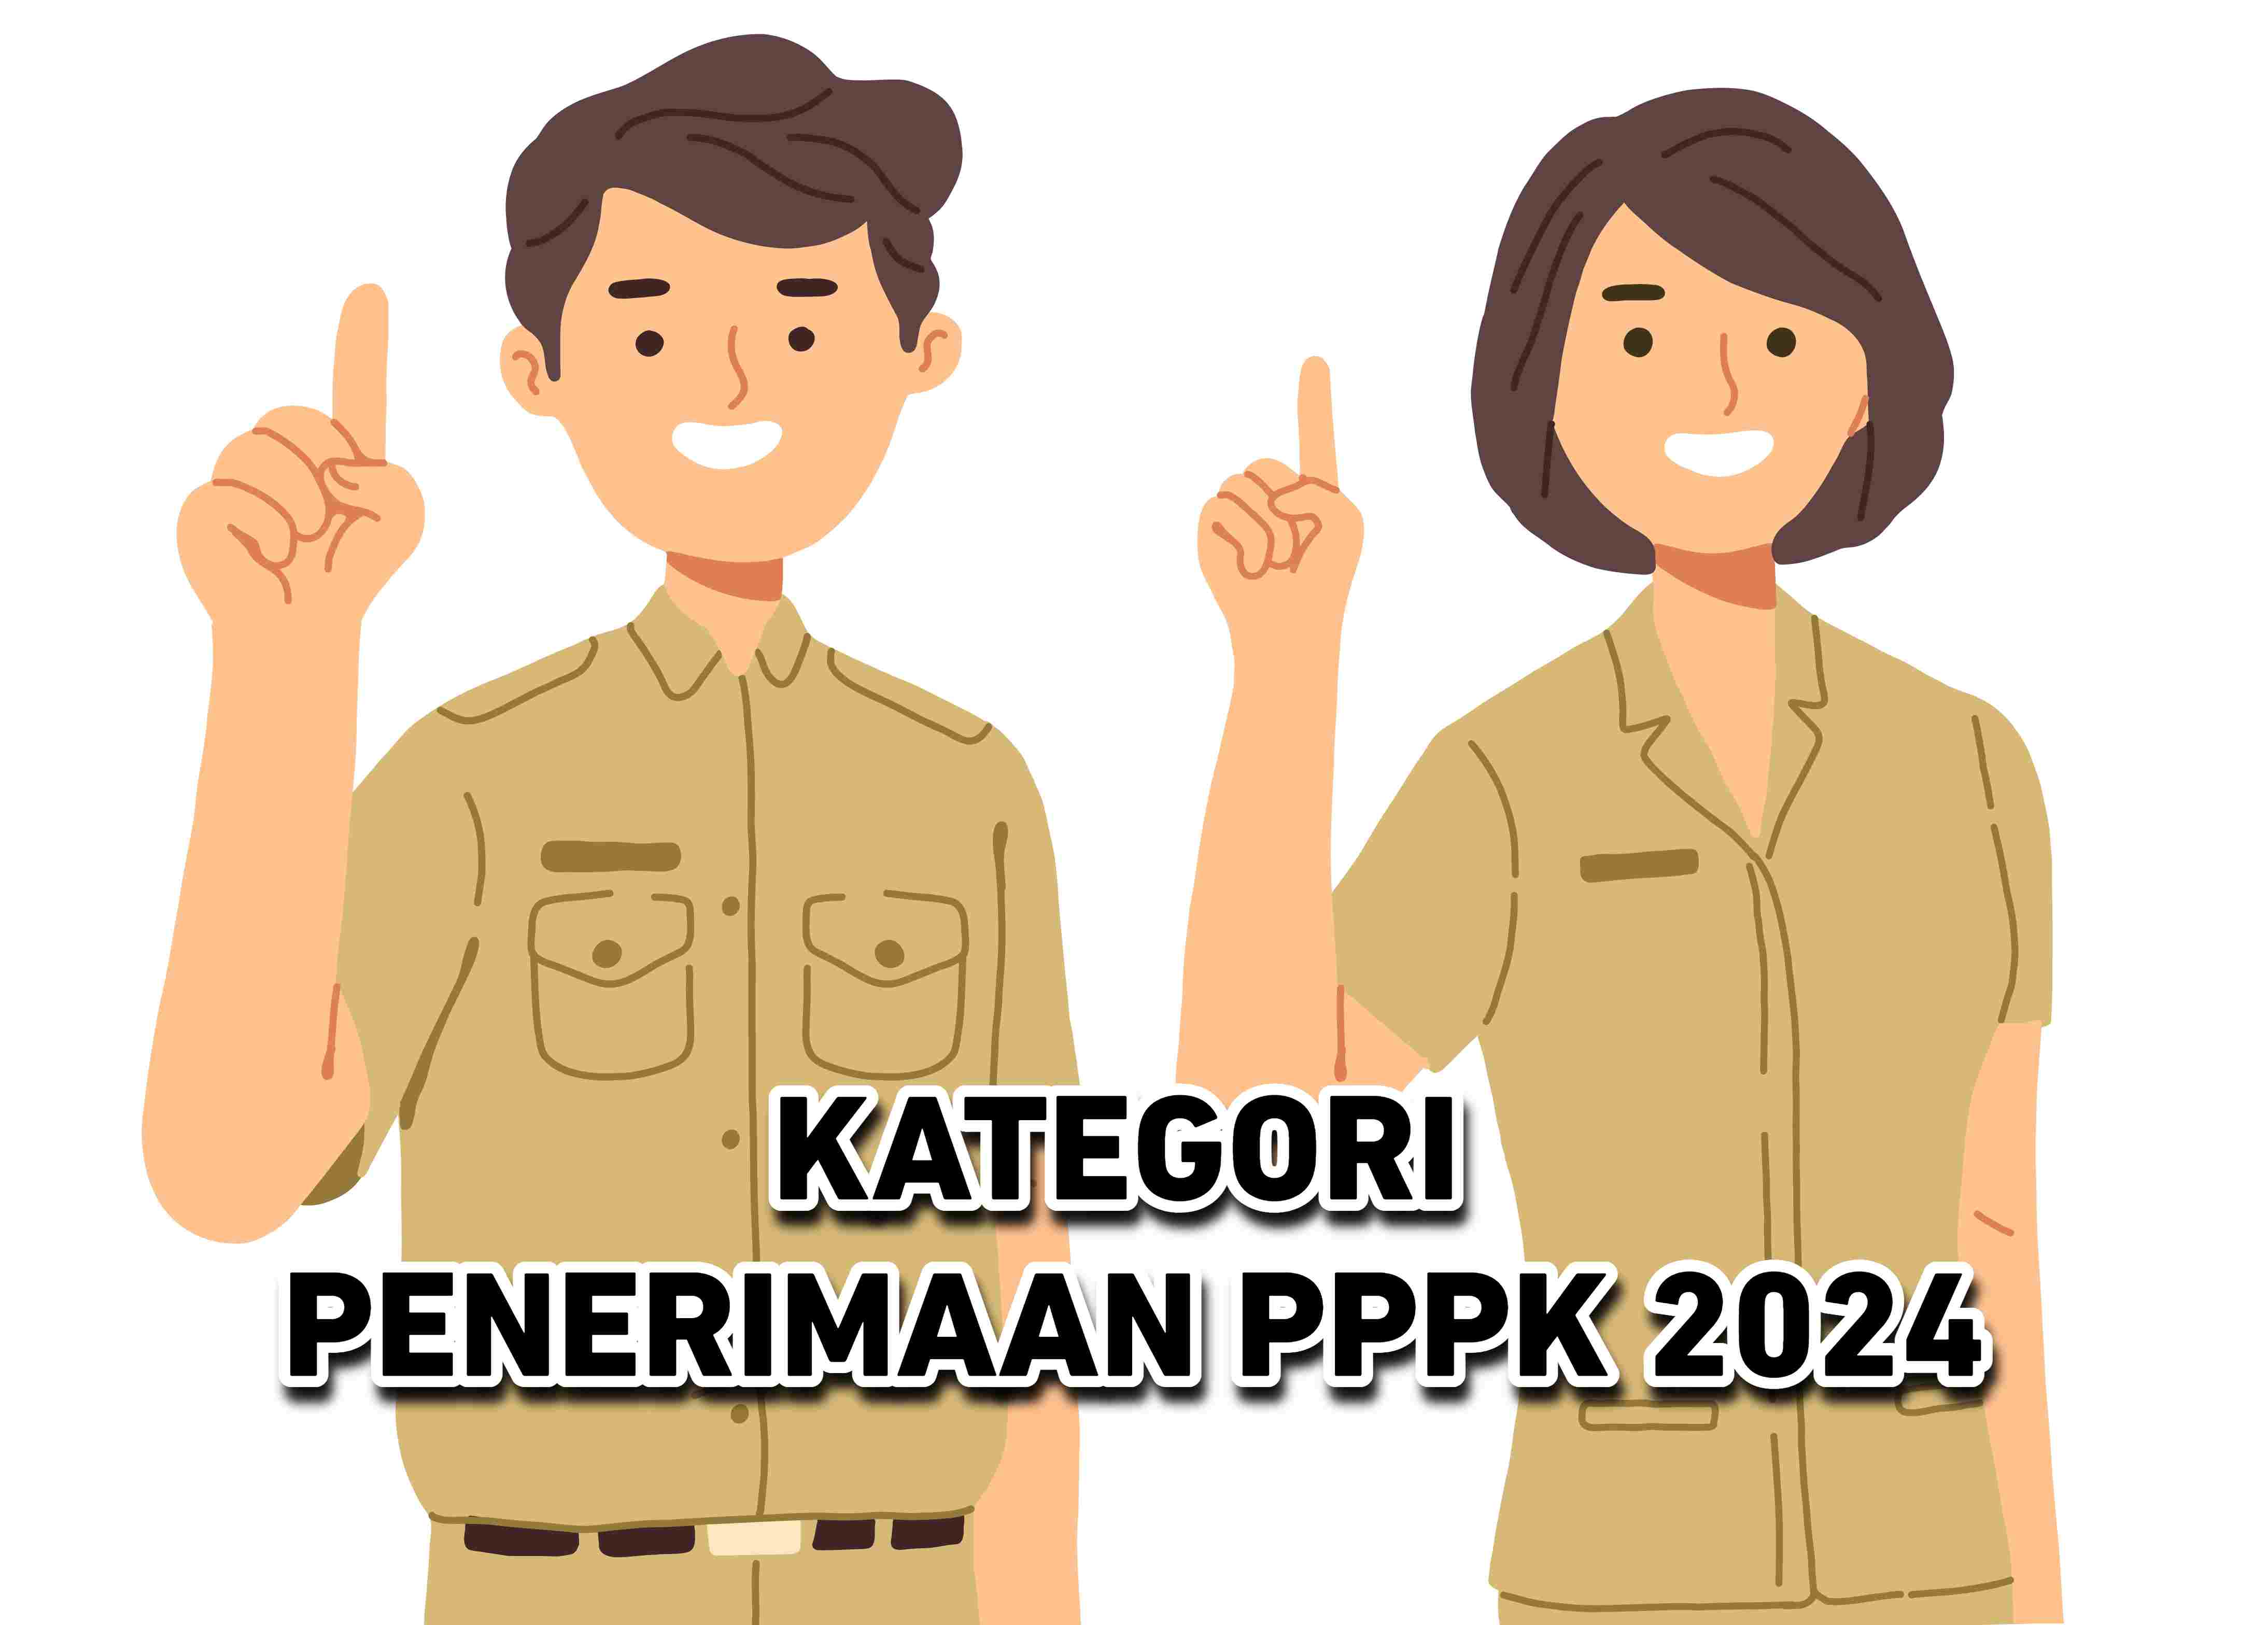 Benarkah Tenaga Honorer Masuk Database BKN Prioritas PPPK 2024?